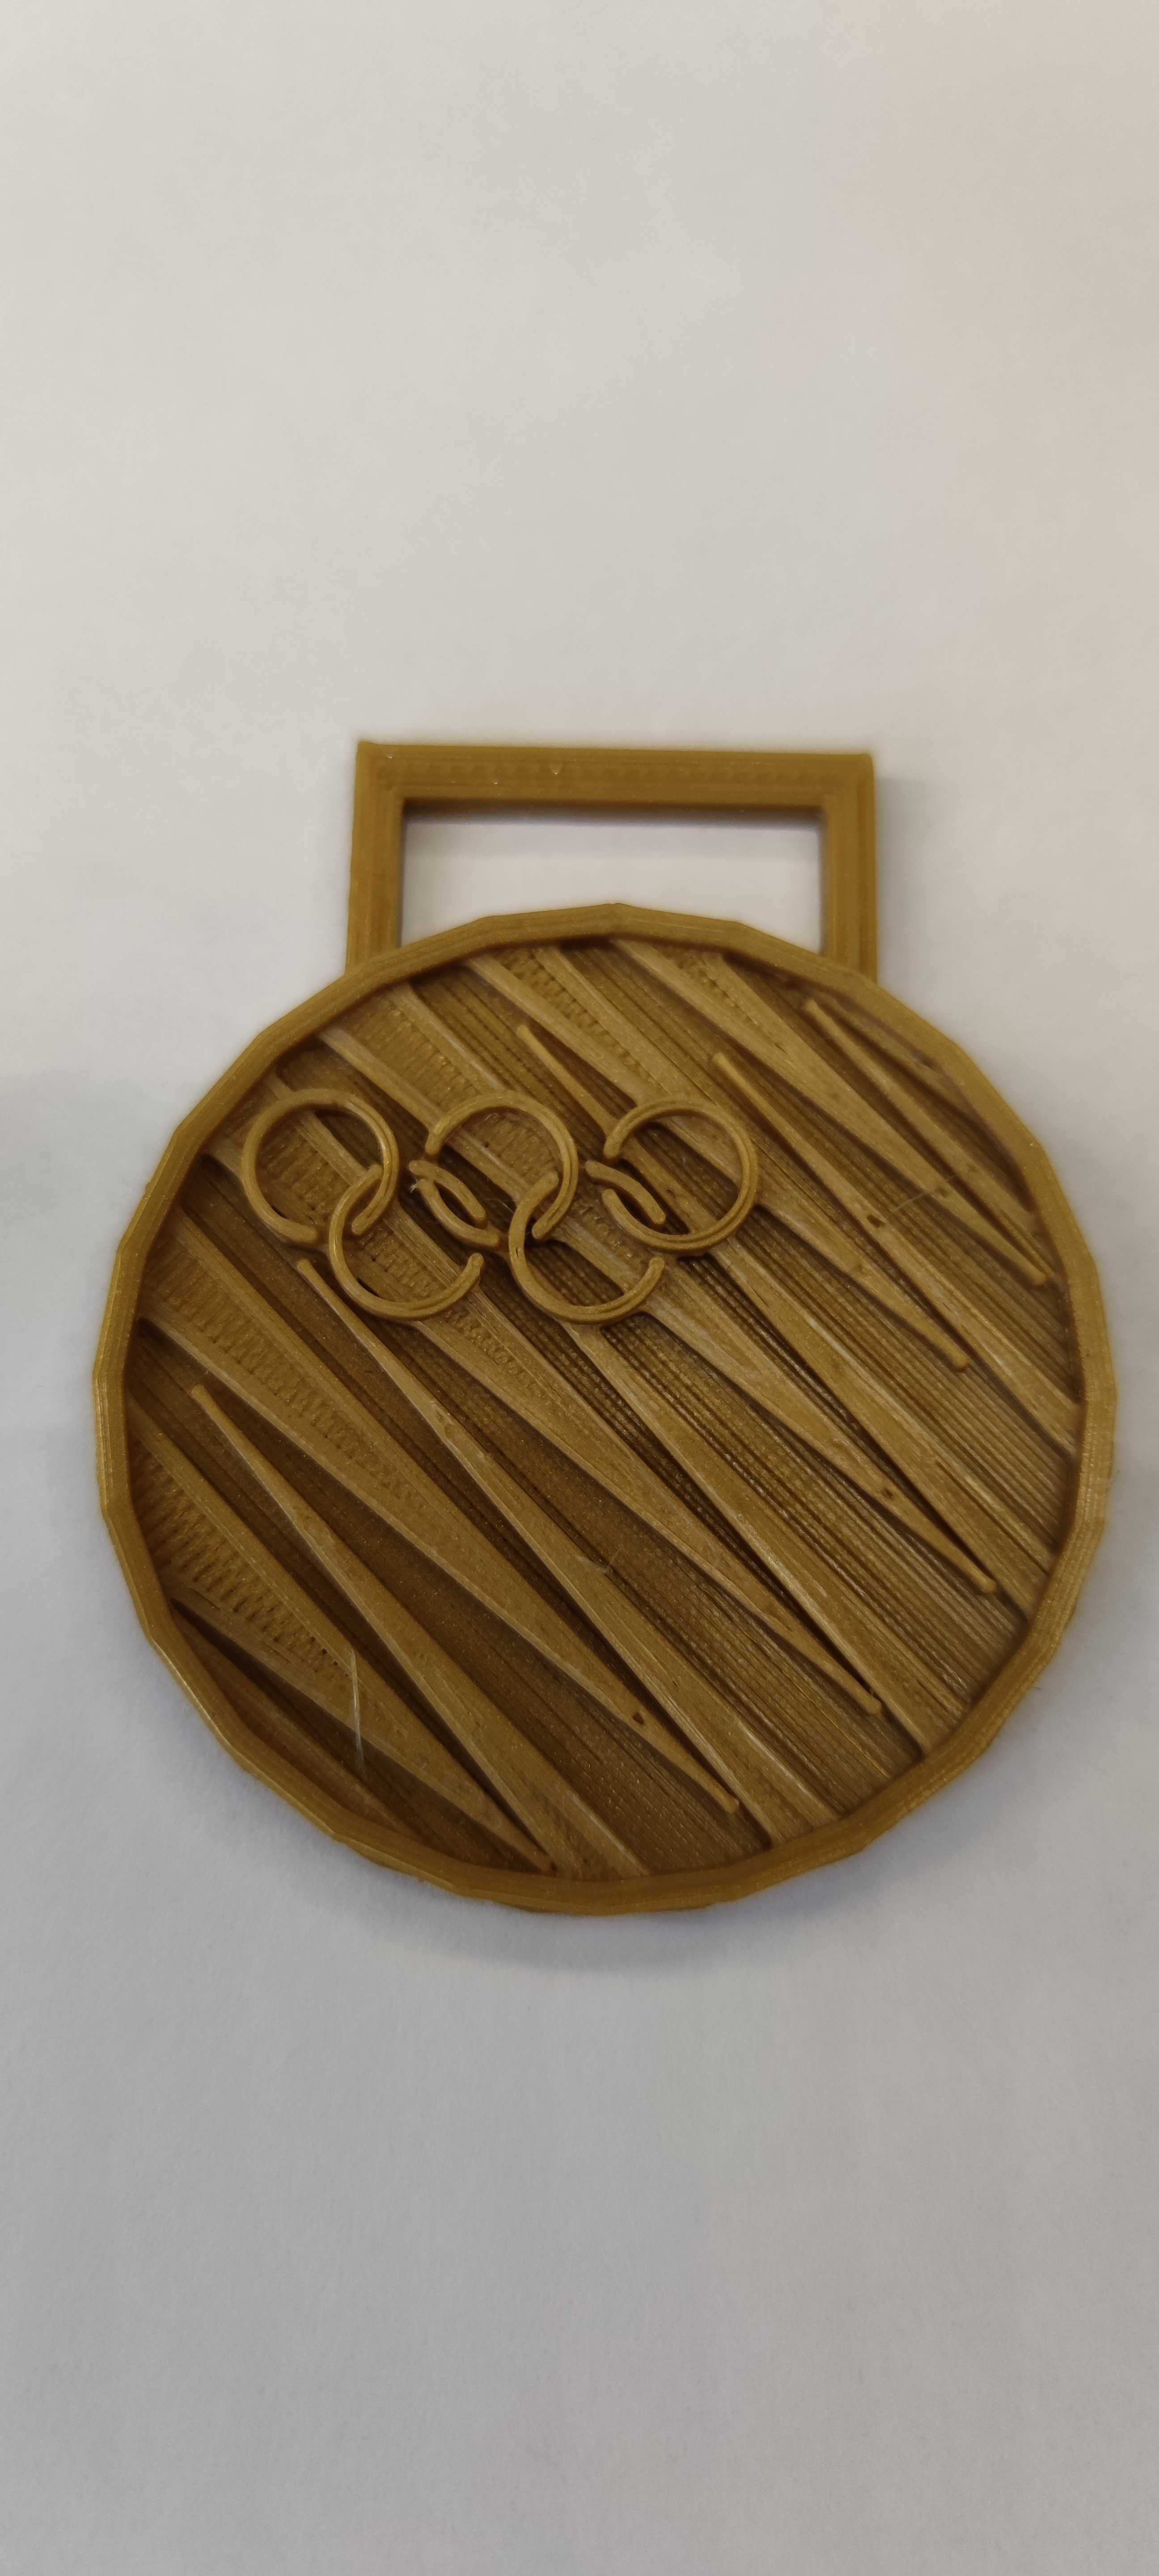 Medal olimpijski złoty olimpiada